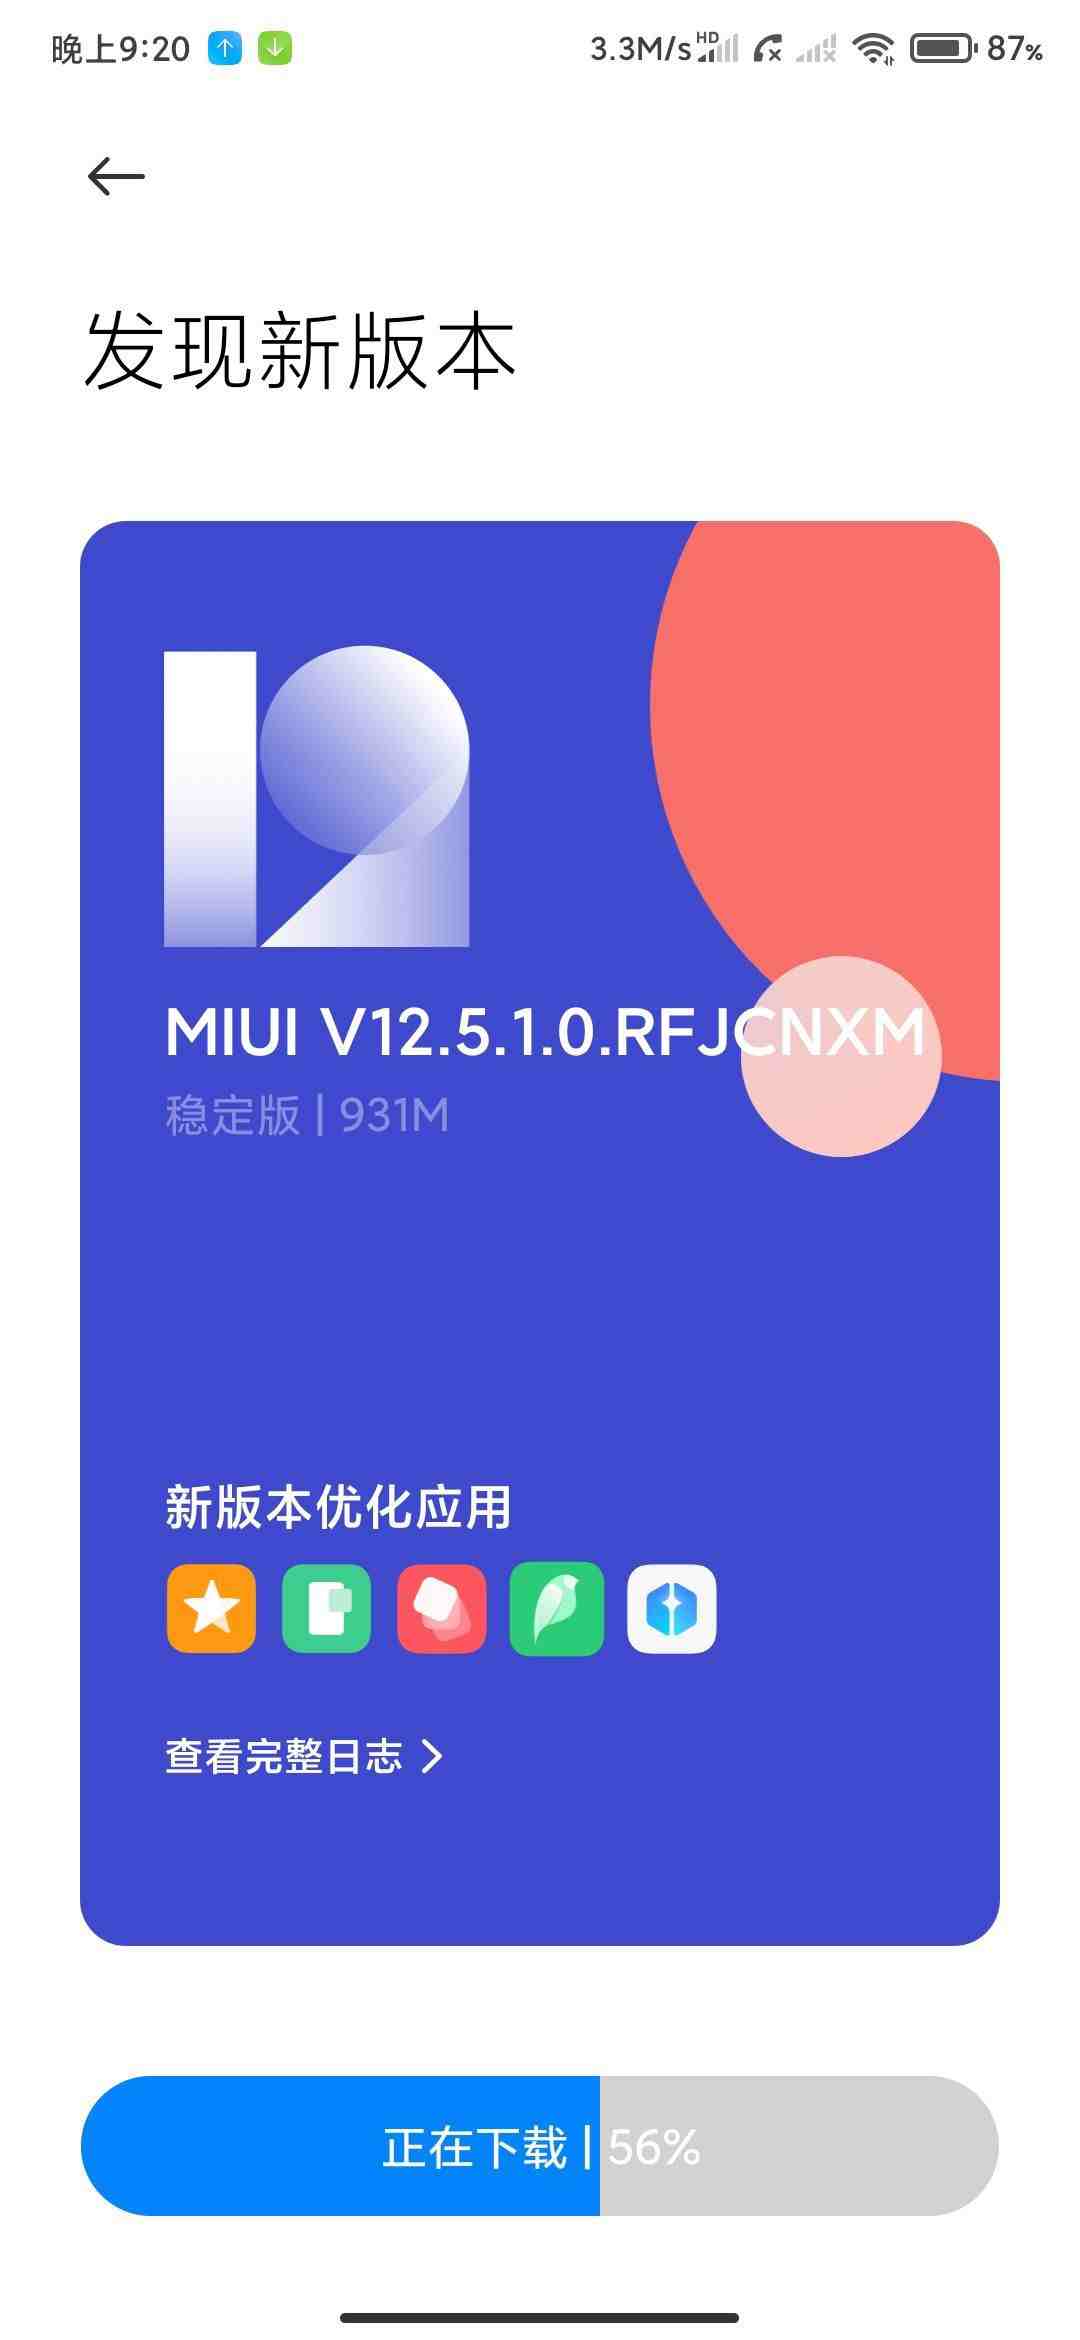 Redmi k20 / mi 9t miui 12.5 update